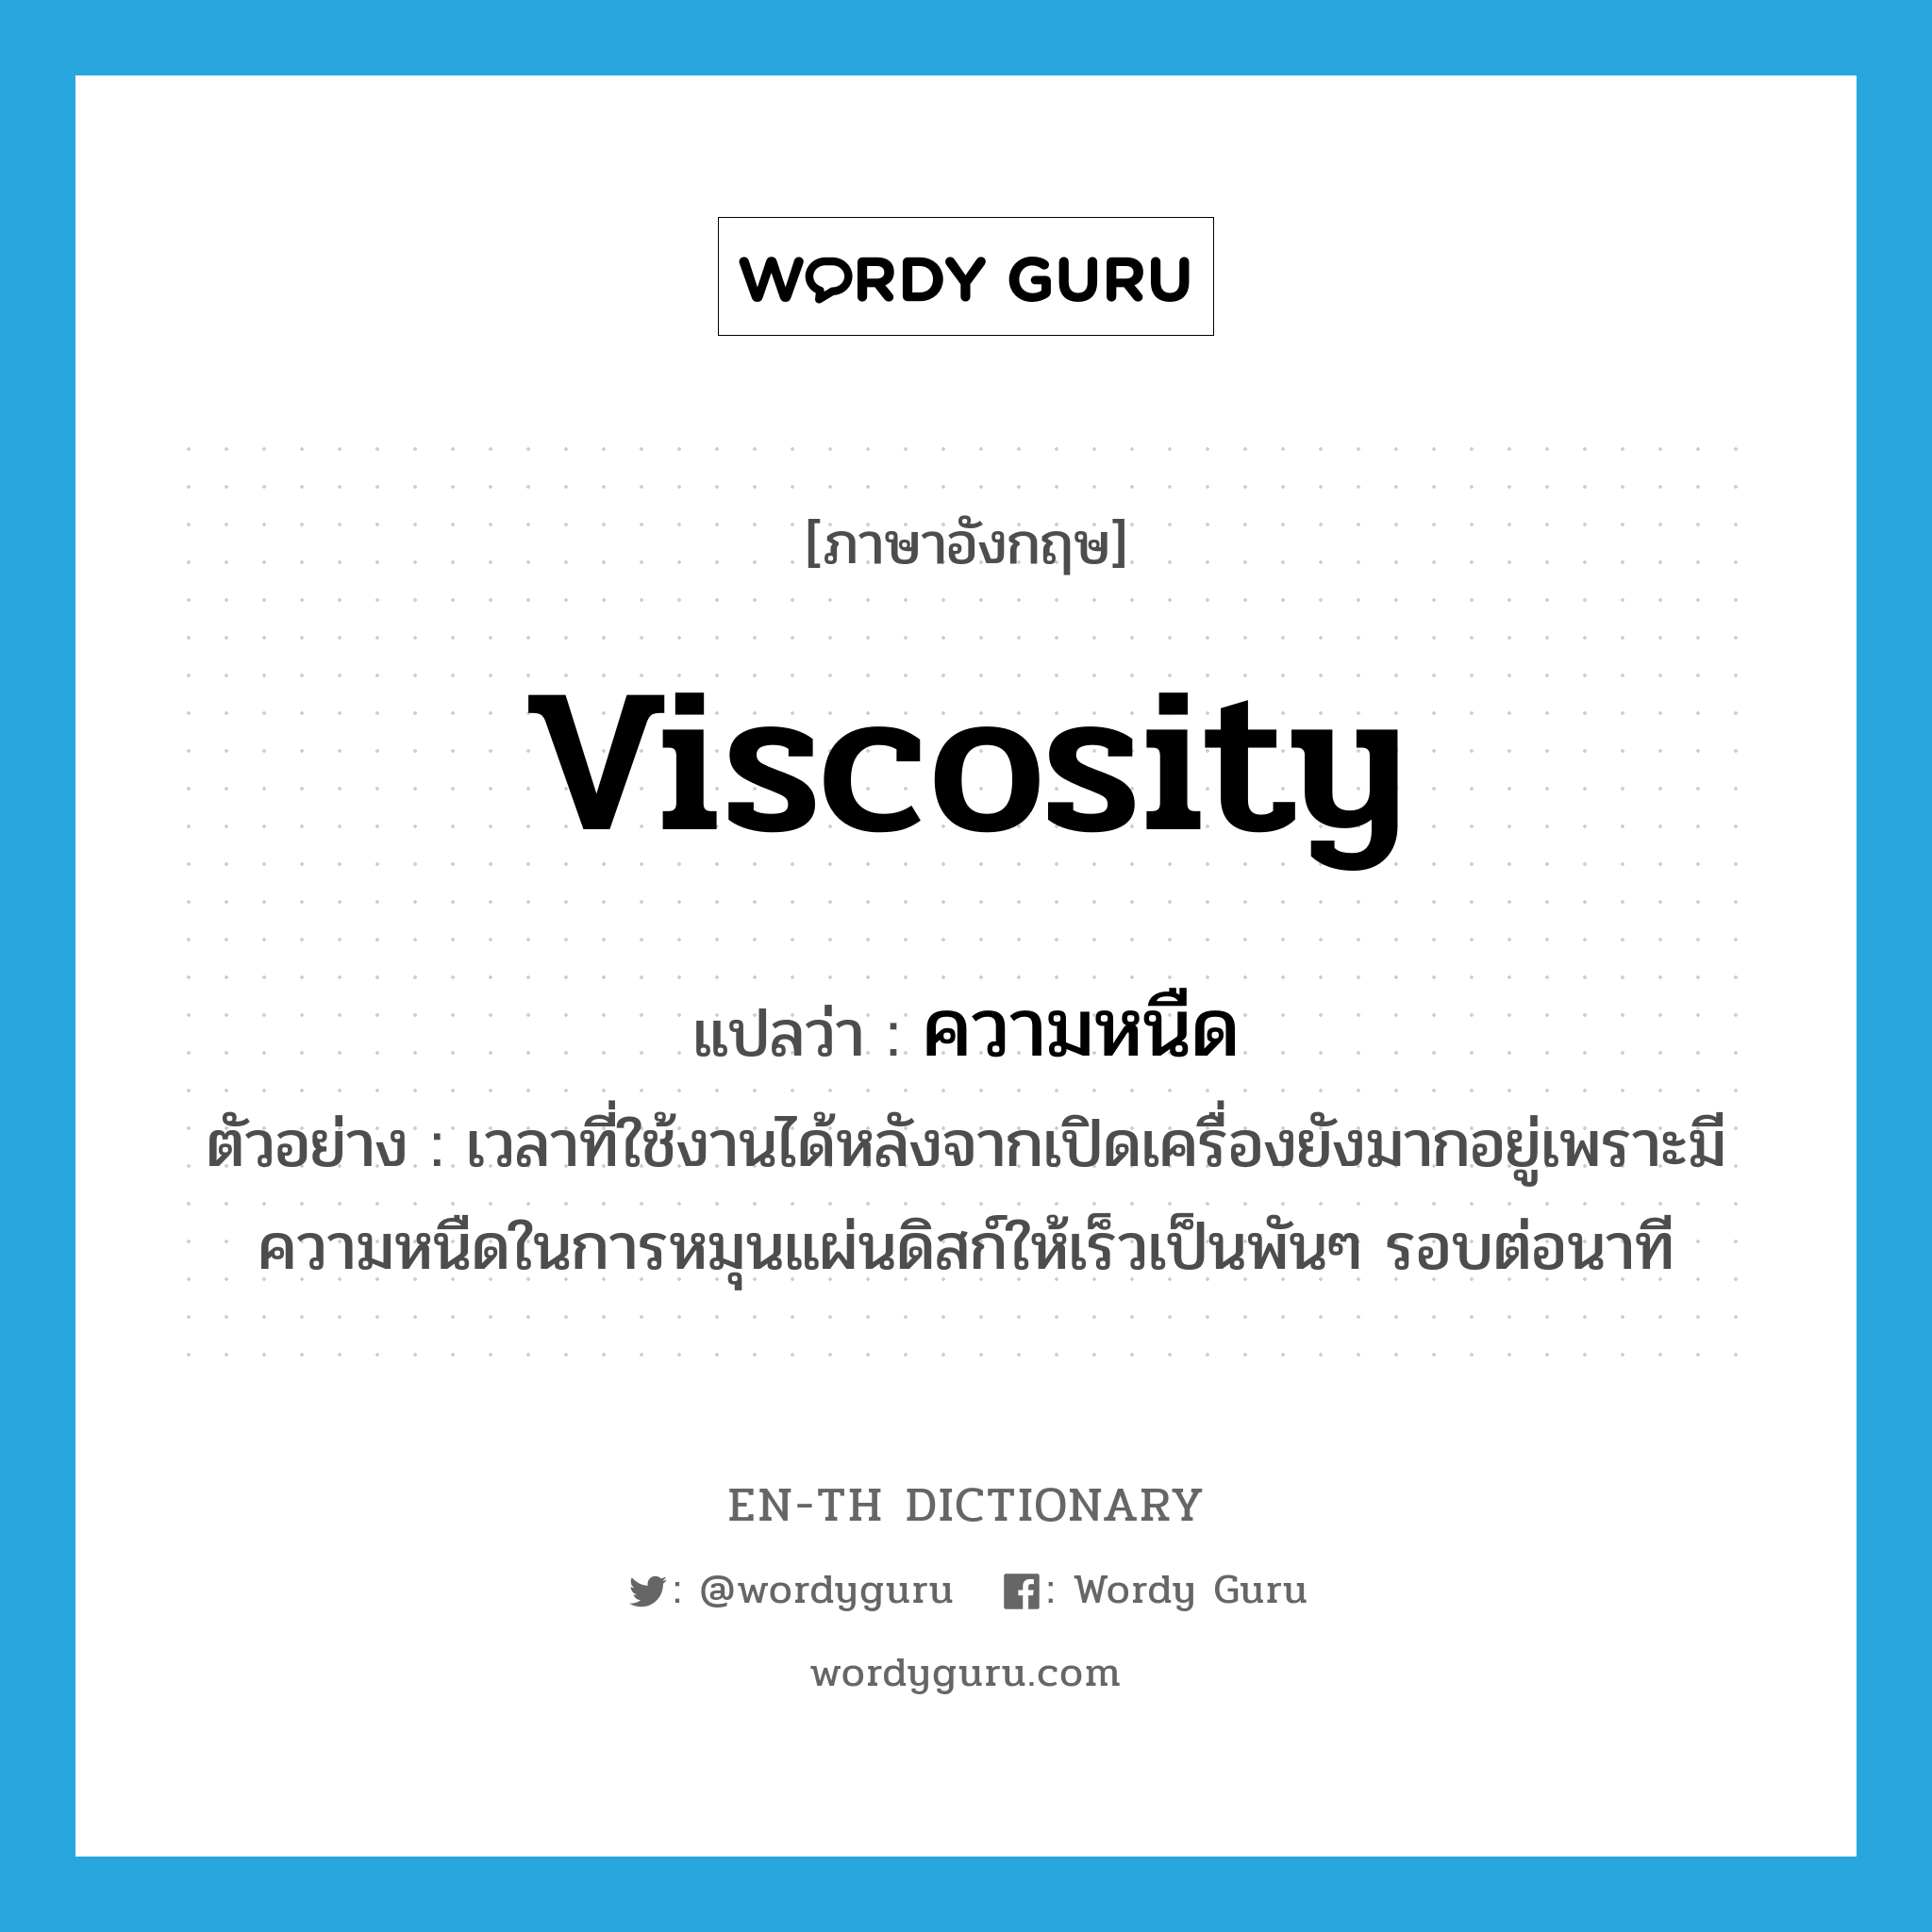 viscosity แปลว่า?, คำศัพท์ภาษาอังกฤษ viscosity แปลว่า ความหนืด ประเภท N ตัวอย่าง เวลาที่ใช้งานได้หลังจากเปิดเครื่องยังมากอยู่เพราะมีความหนืดในการหมุนแผ่นดิสก์ให้เร็วเป็นพันๆ รอบต่อนาที หมวด N